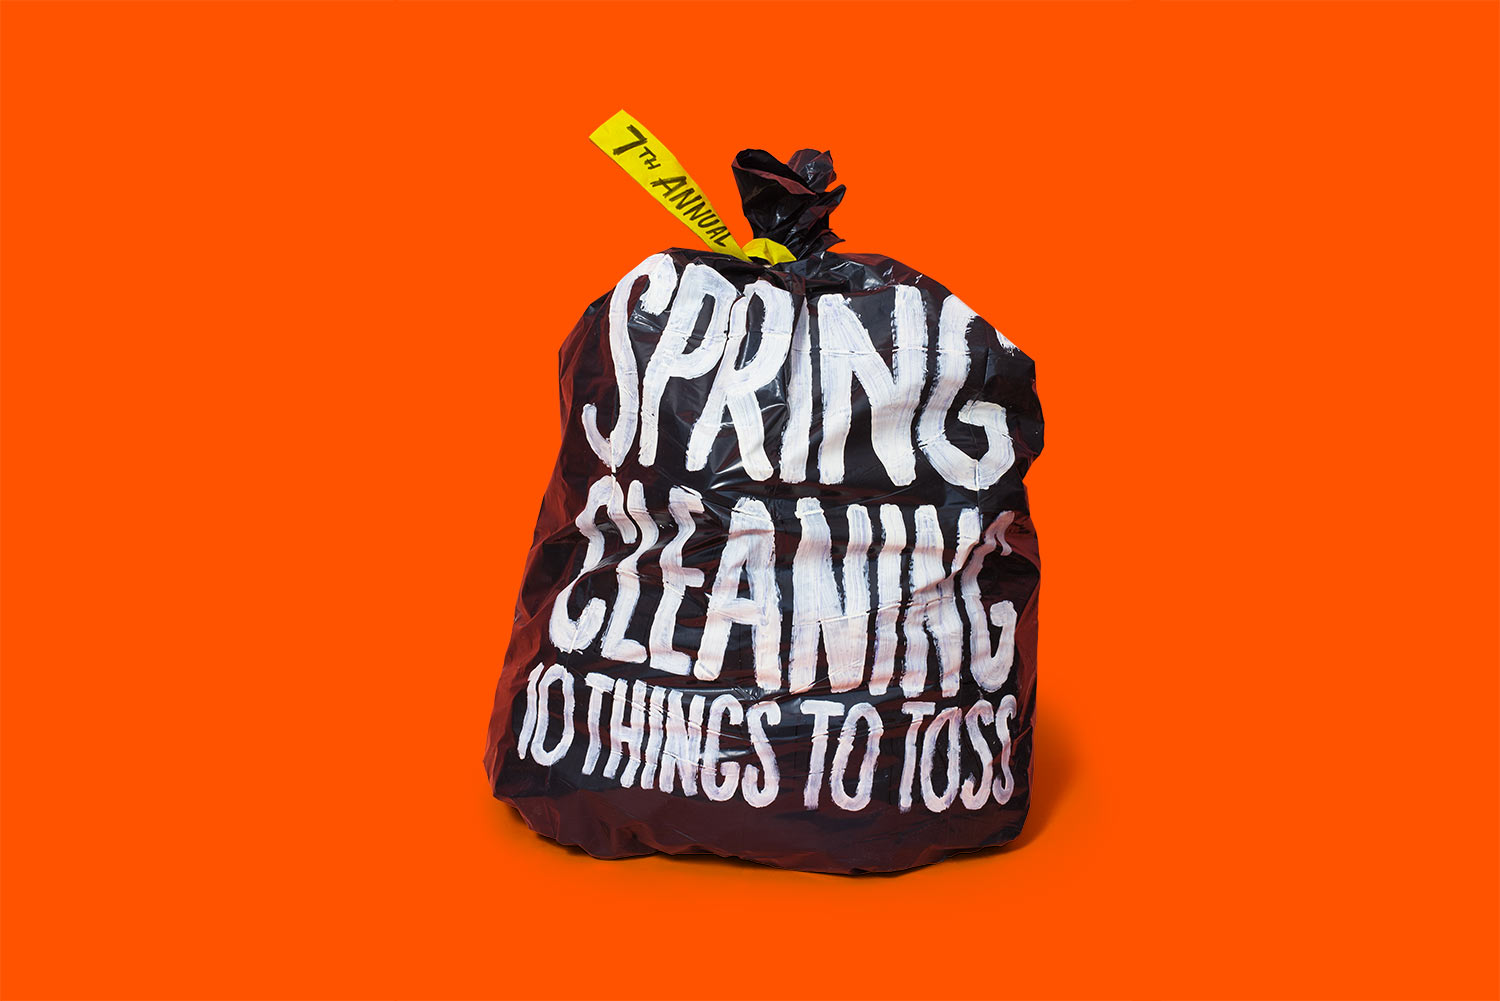   Spring Cleaning: 10 Ideas to Toss.&nbsp; Washington Post, &nbsp;Art Director: Chris Rukan  